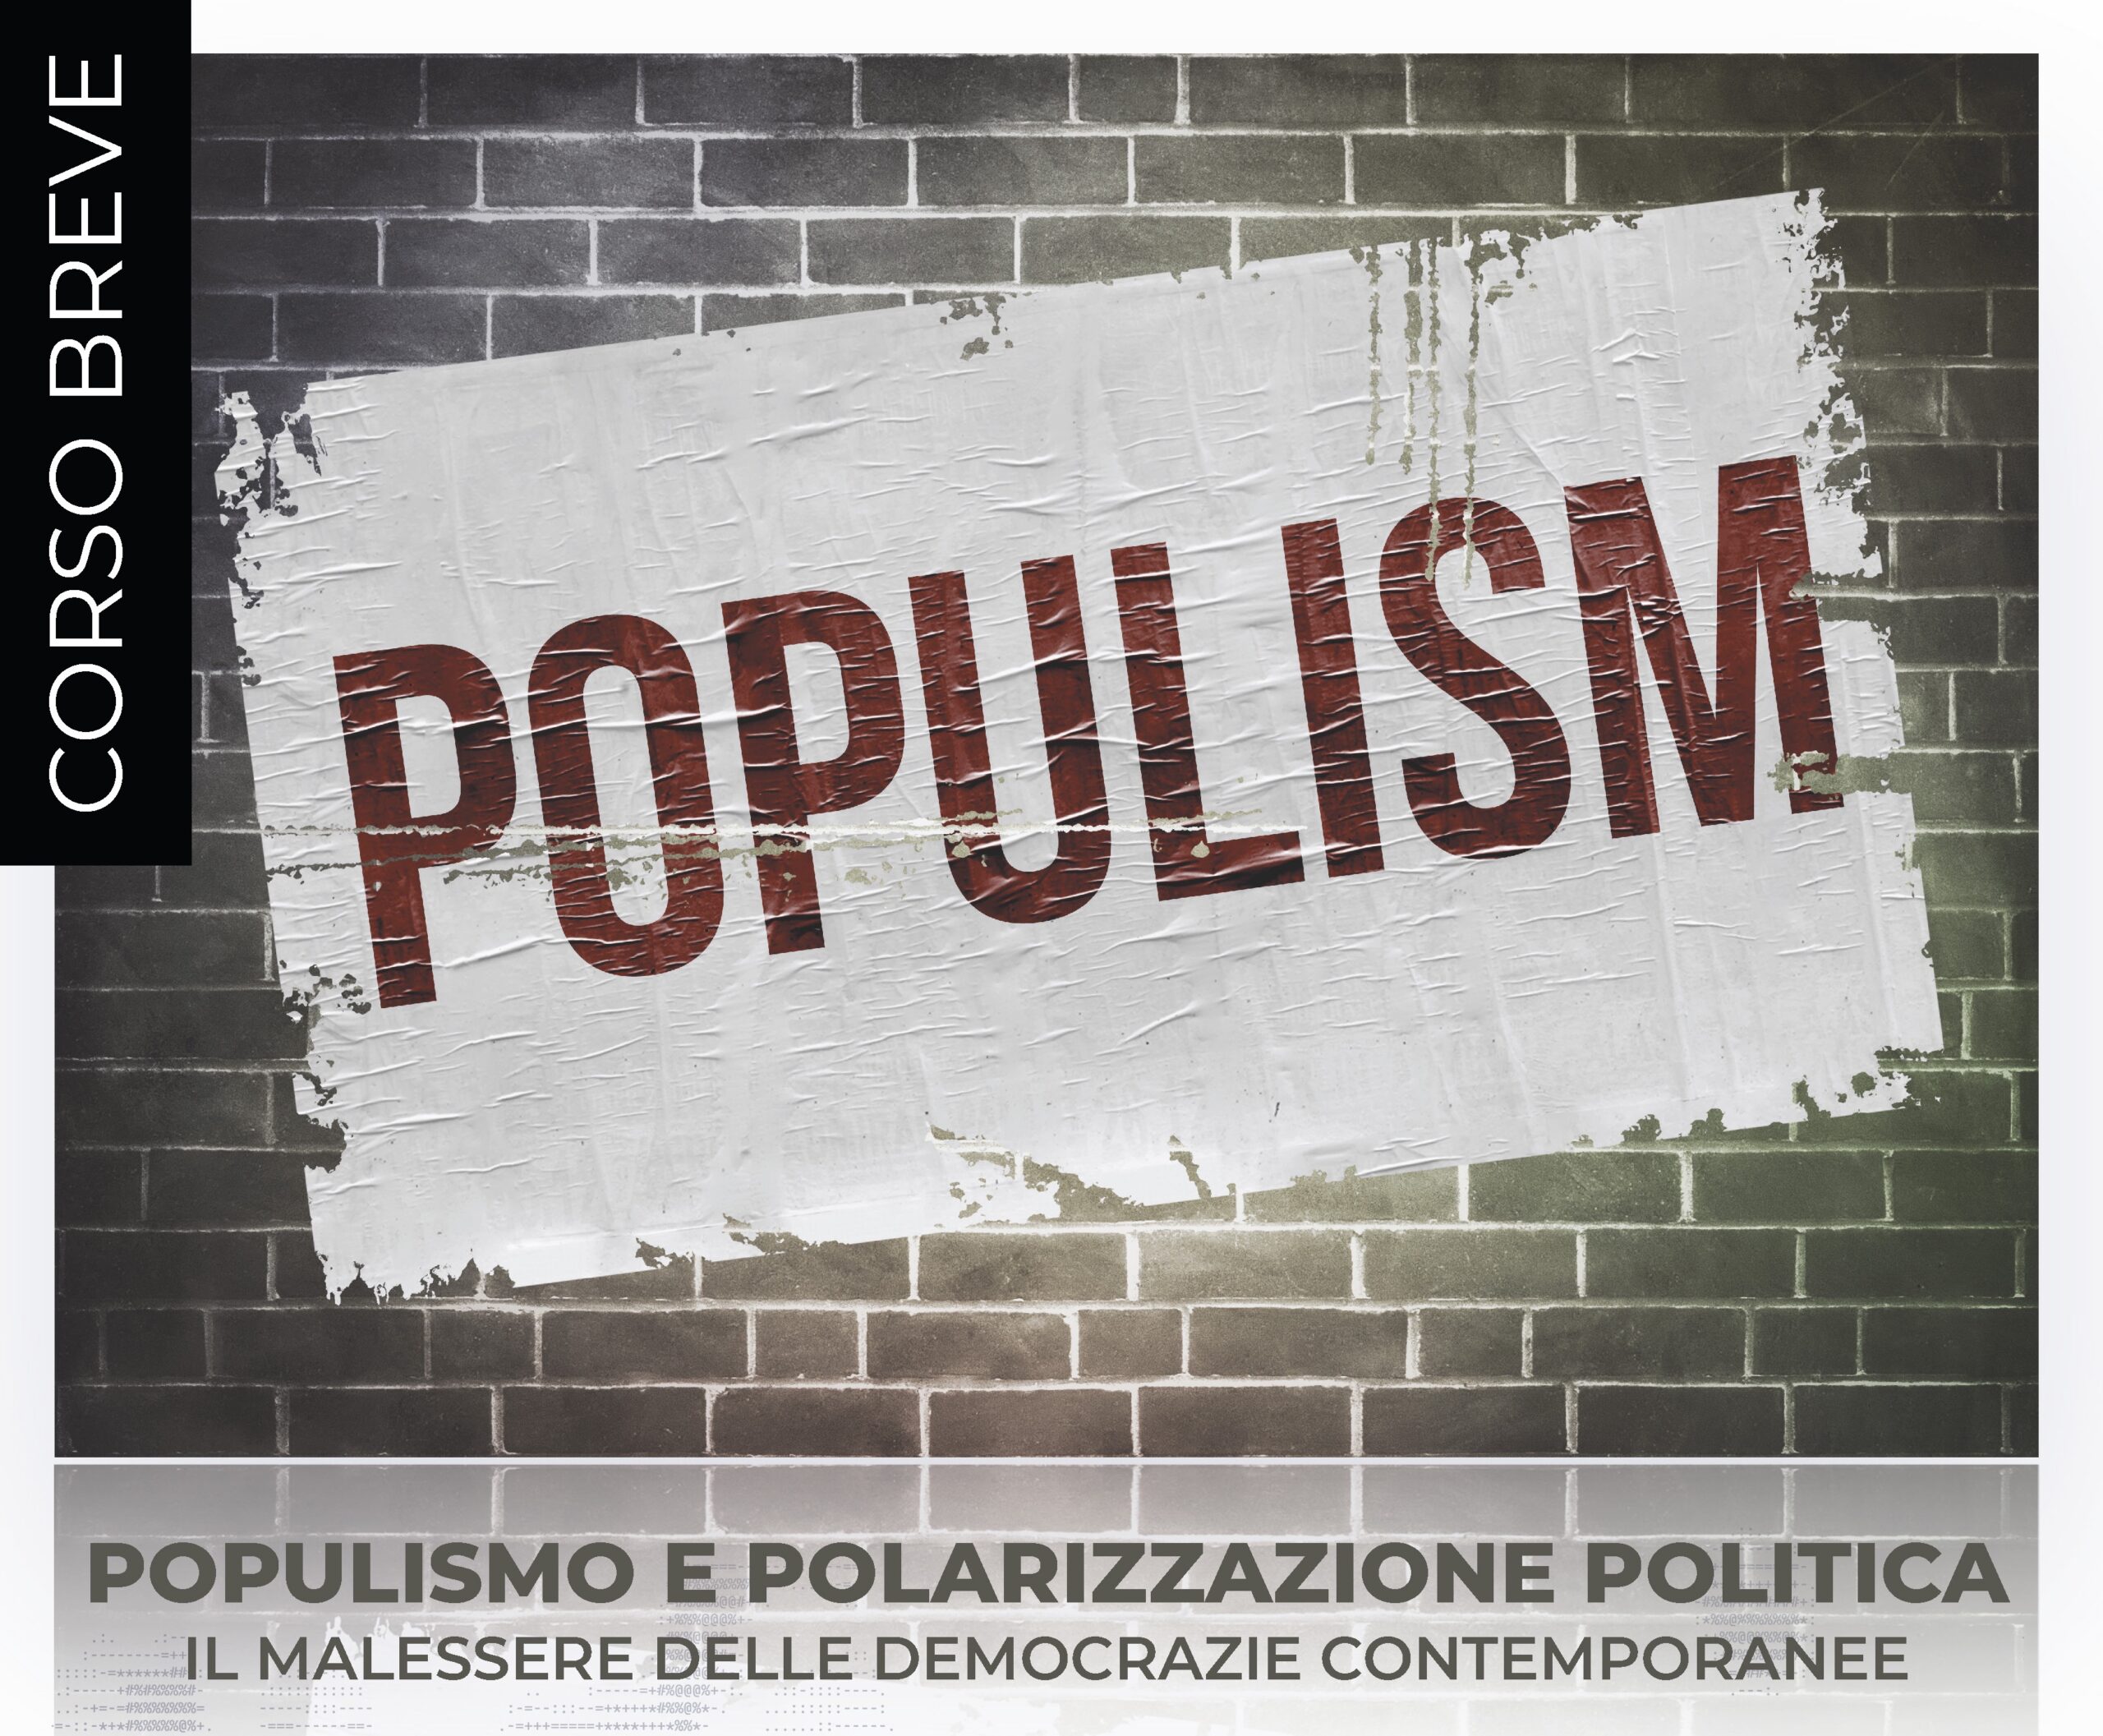 POPULISMO E POLARIZZAZIONE POLITICA  – Corso breve di Mattia Zulianello